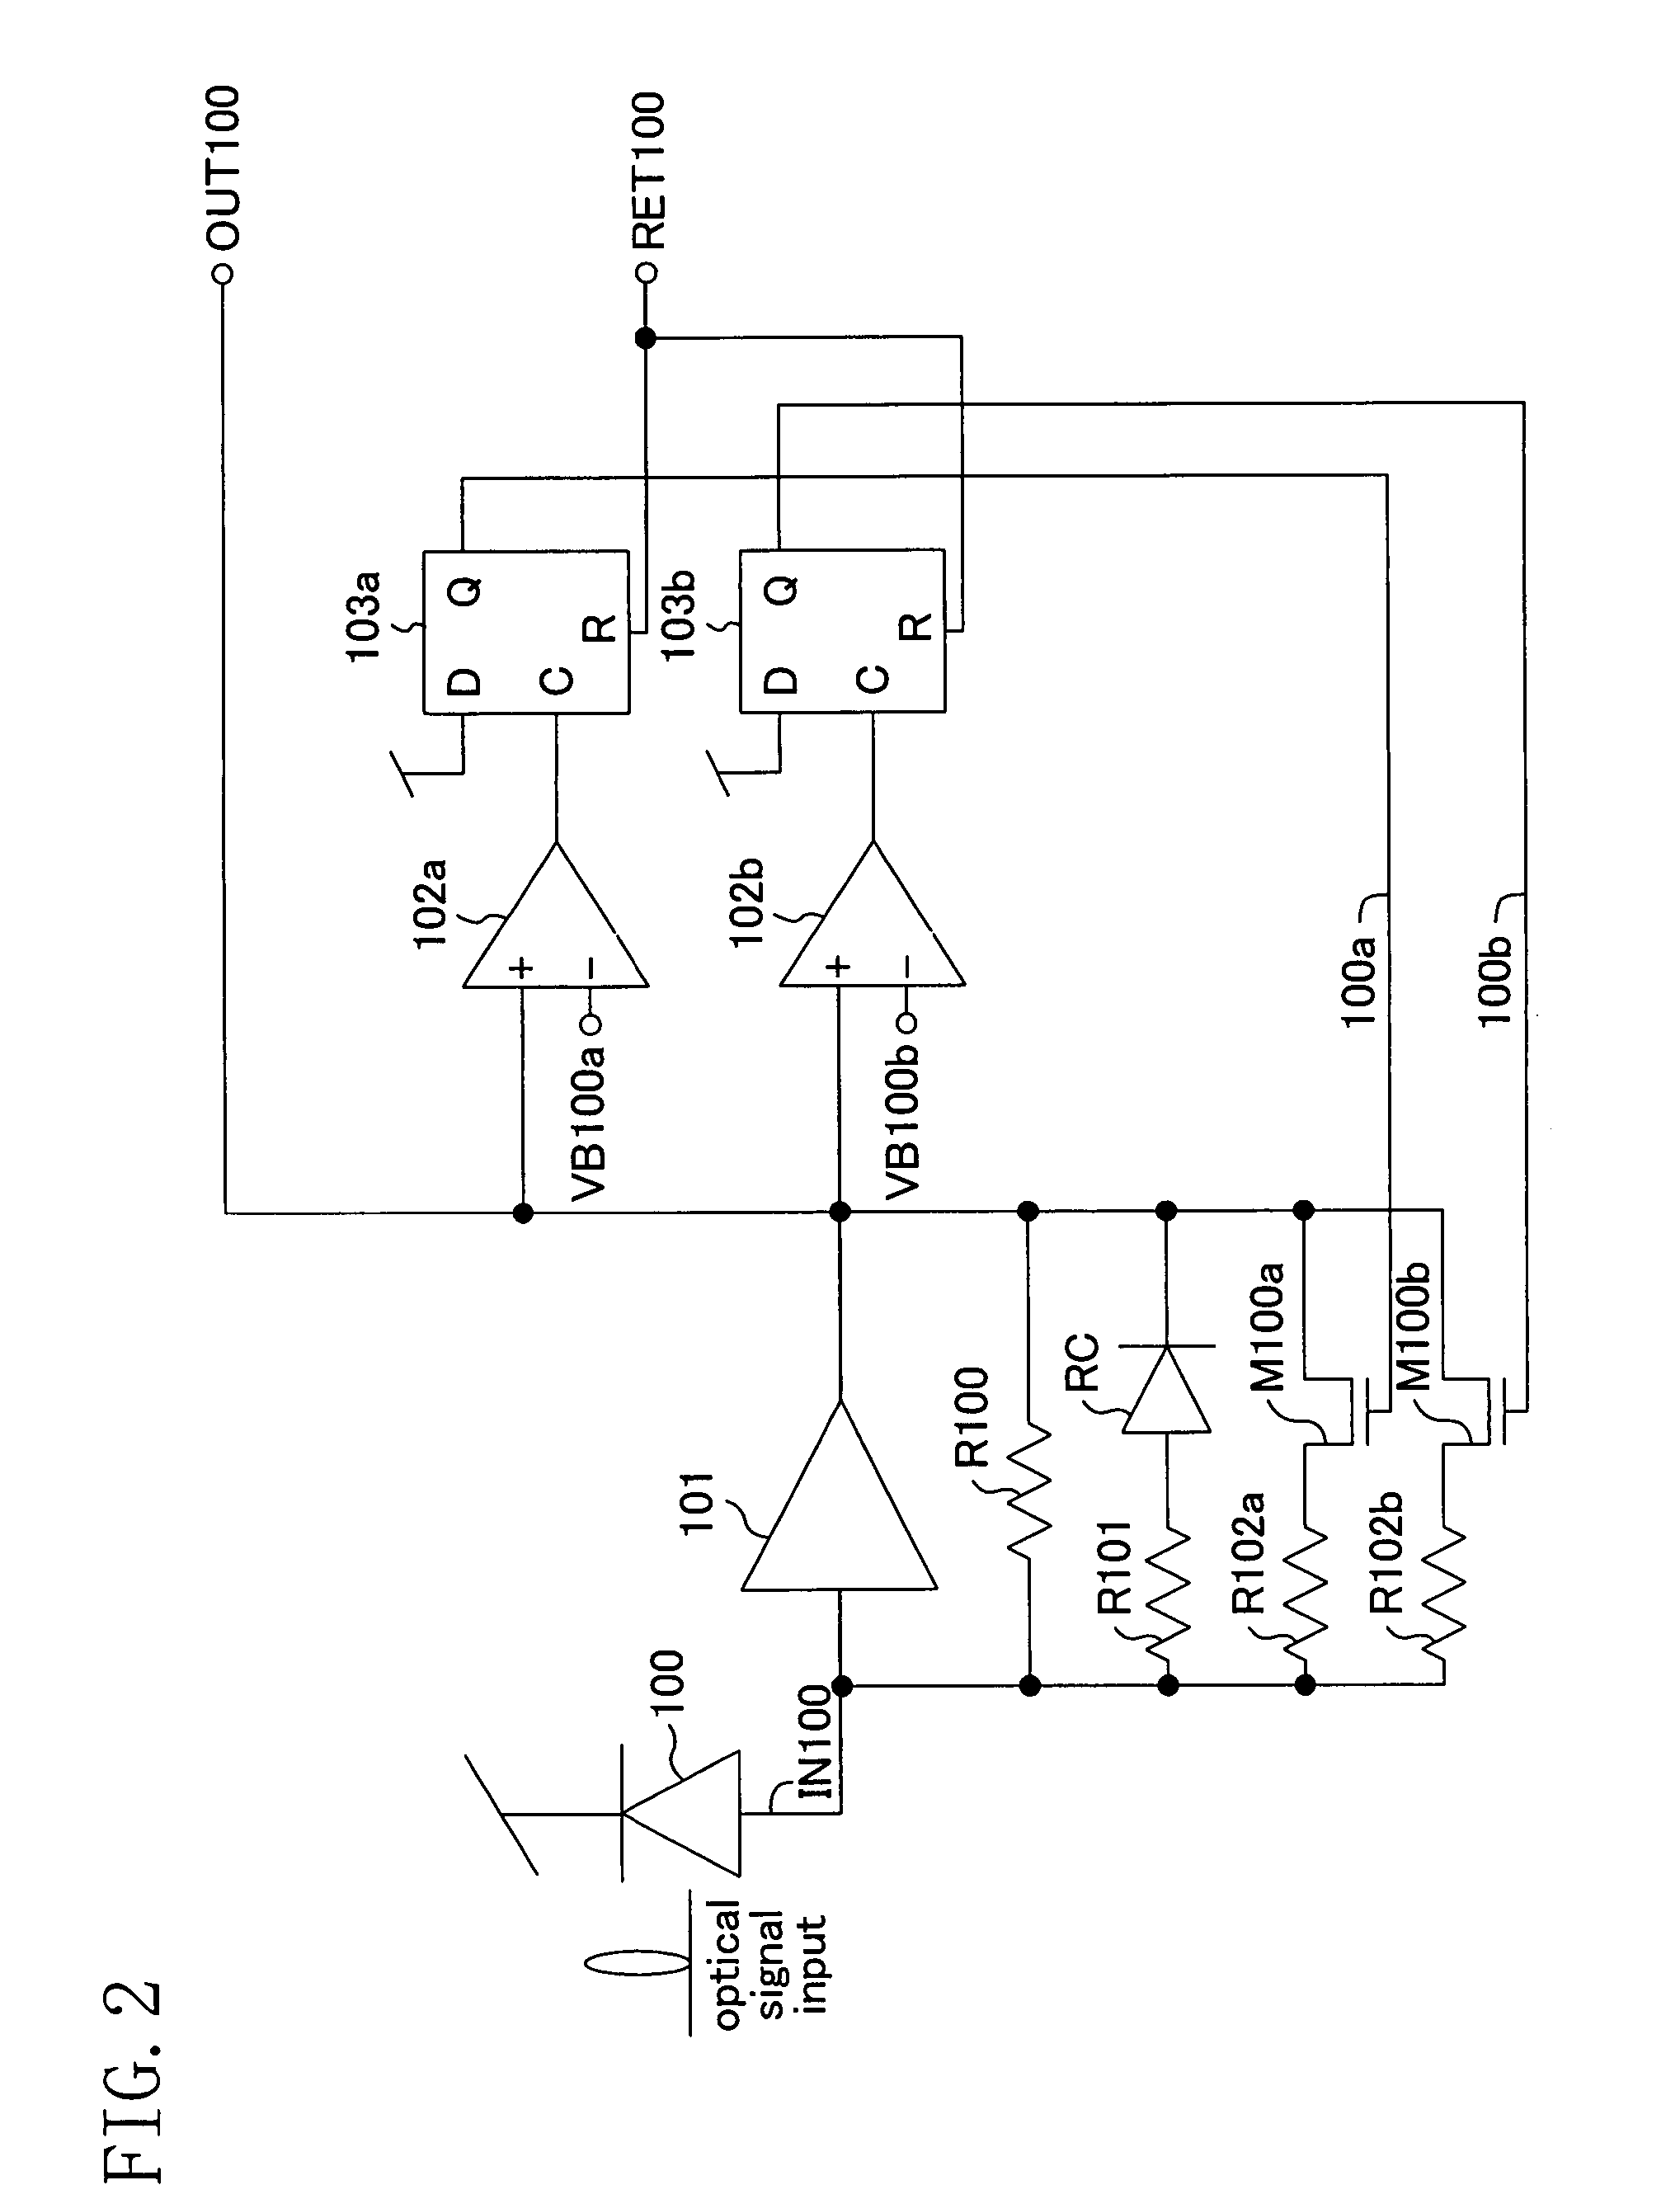 Receiving circuit and optical signal receiving circuit